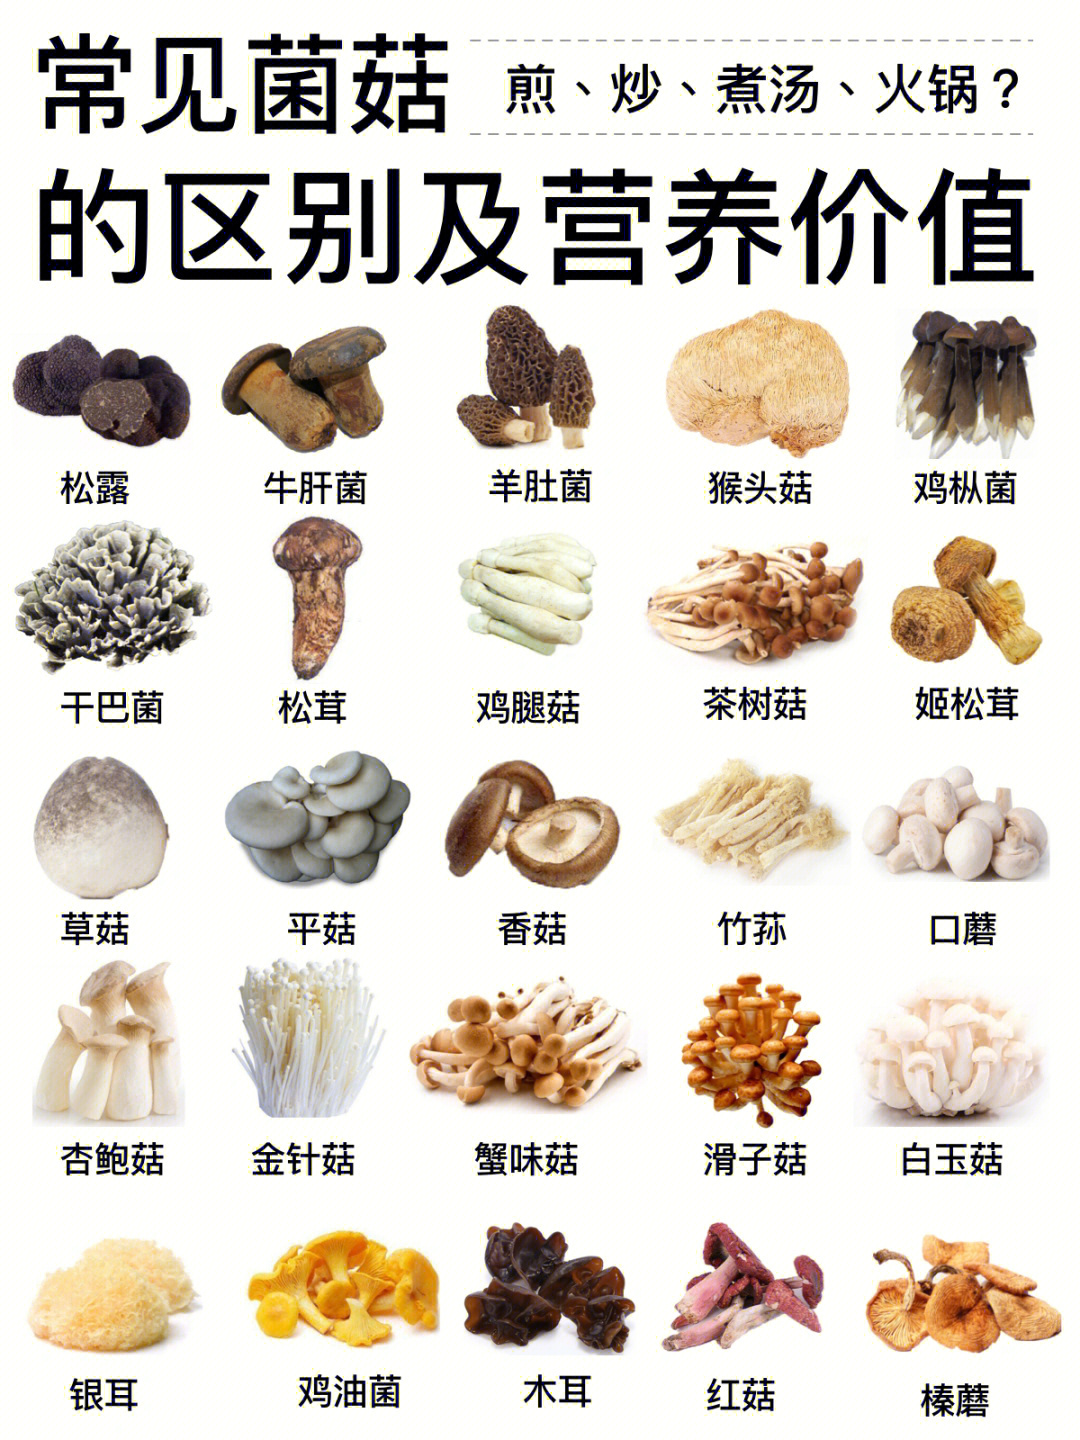 【菌菇说明书】常见菌菇类区别营养价值及做法